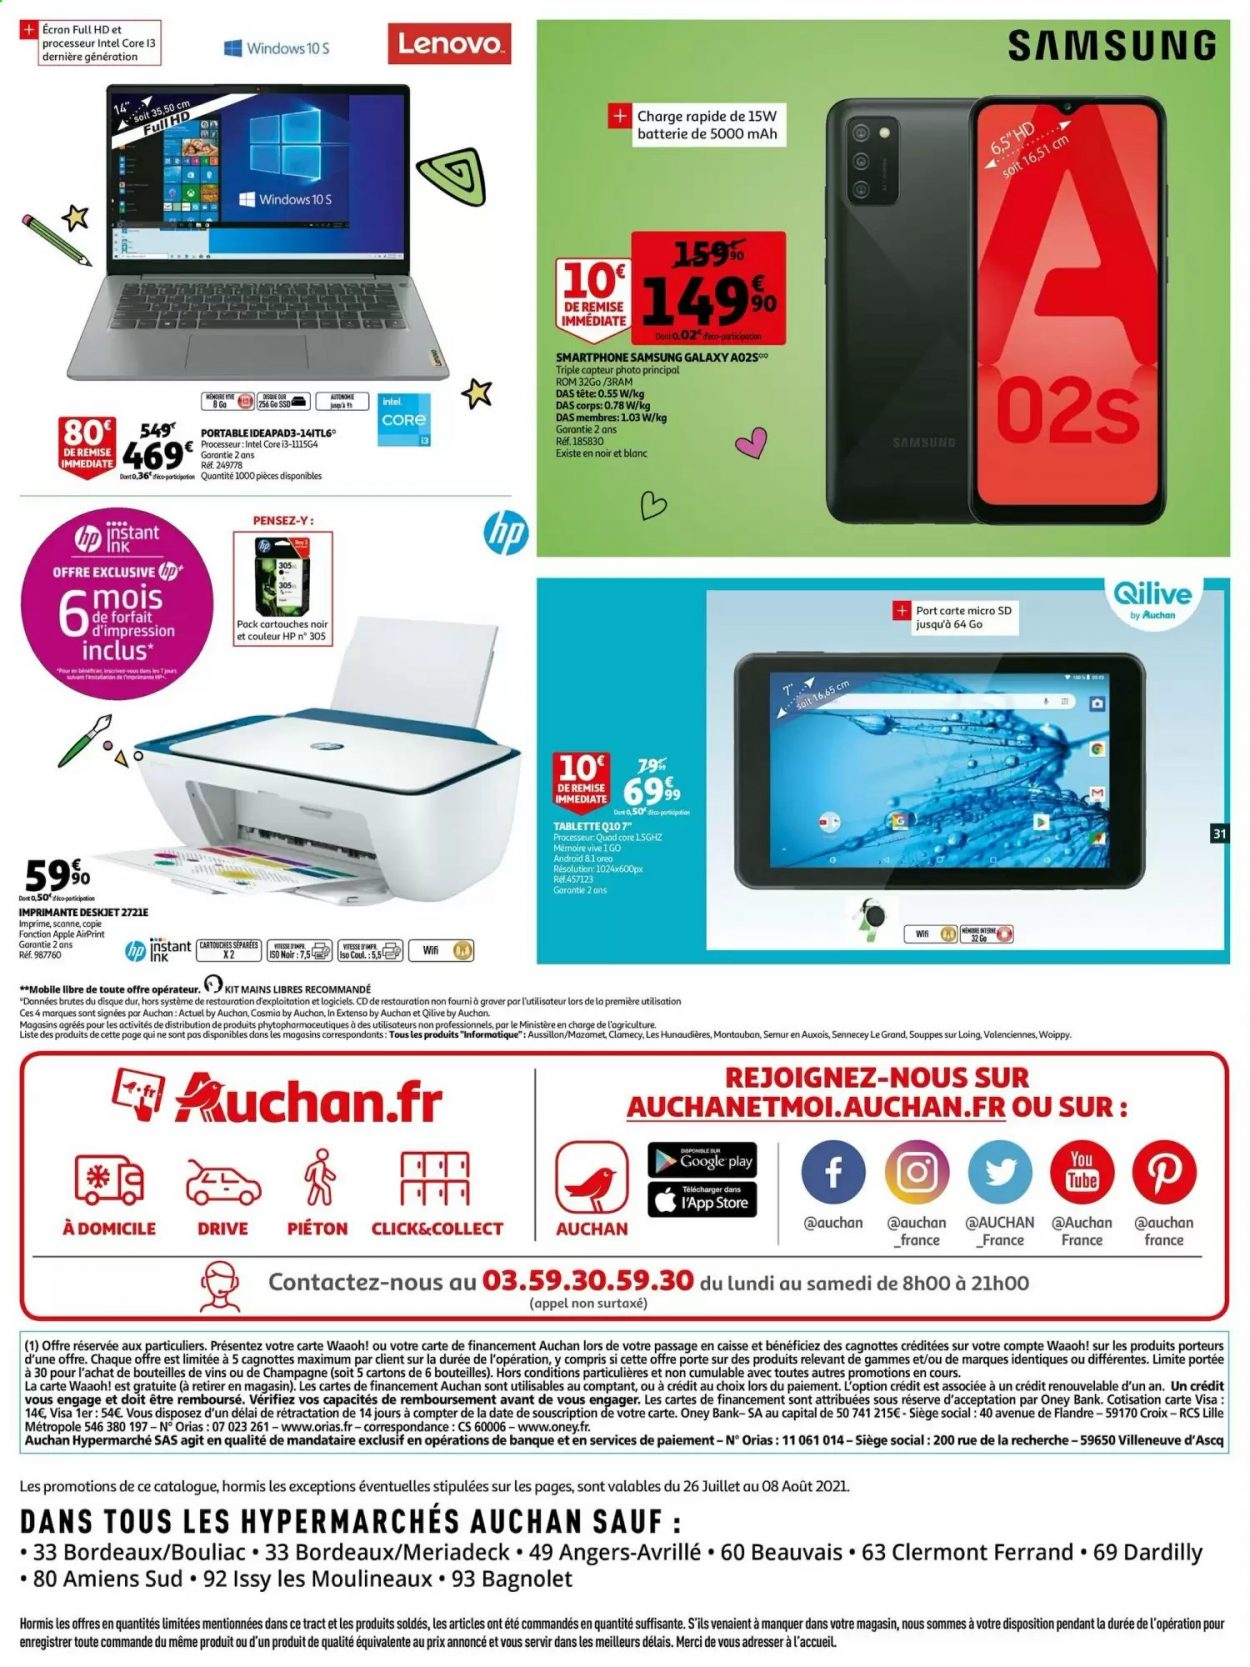 thumbnail - Catalogue Auchan - 27/07/2021 - 08/08/2021 - Produits soldés - Samsung, Oreo, Bordeaux, vin rouge, vin, Apple, Lenovo, smartphone, carte micro sd, Hewlett Packard, tablette, imprimante. Page 31.